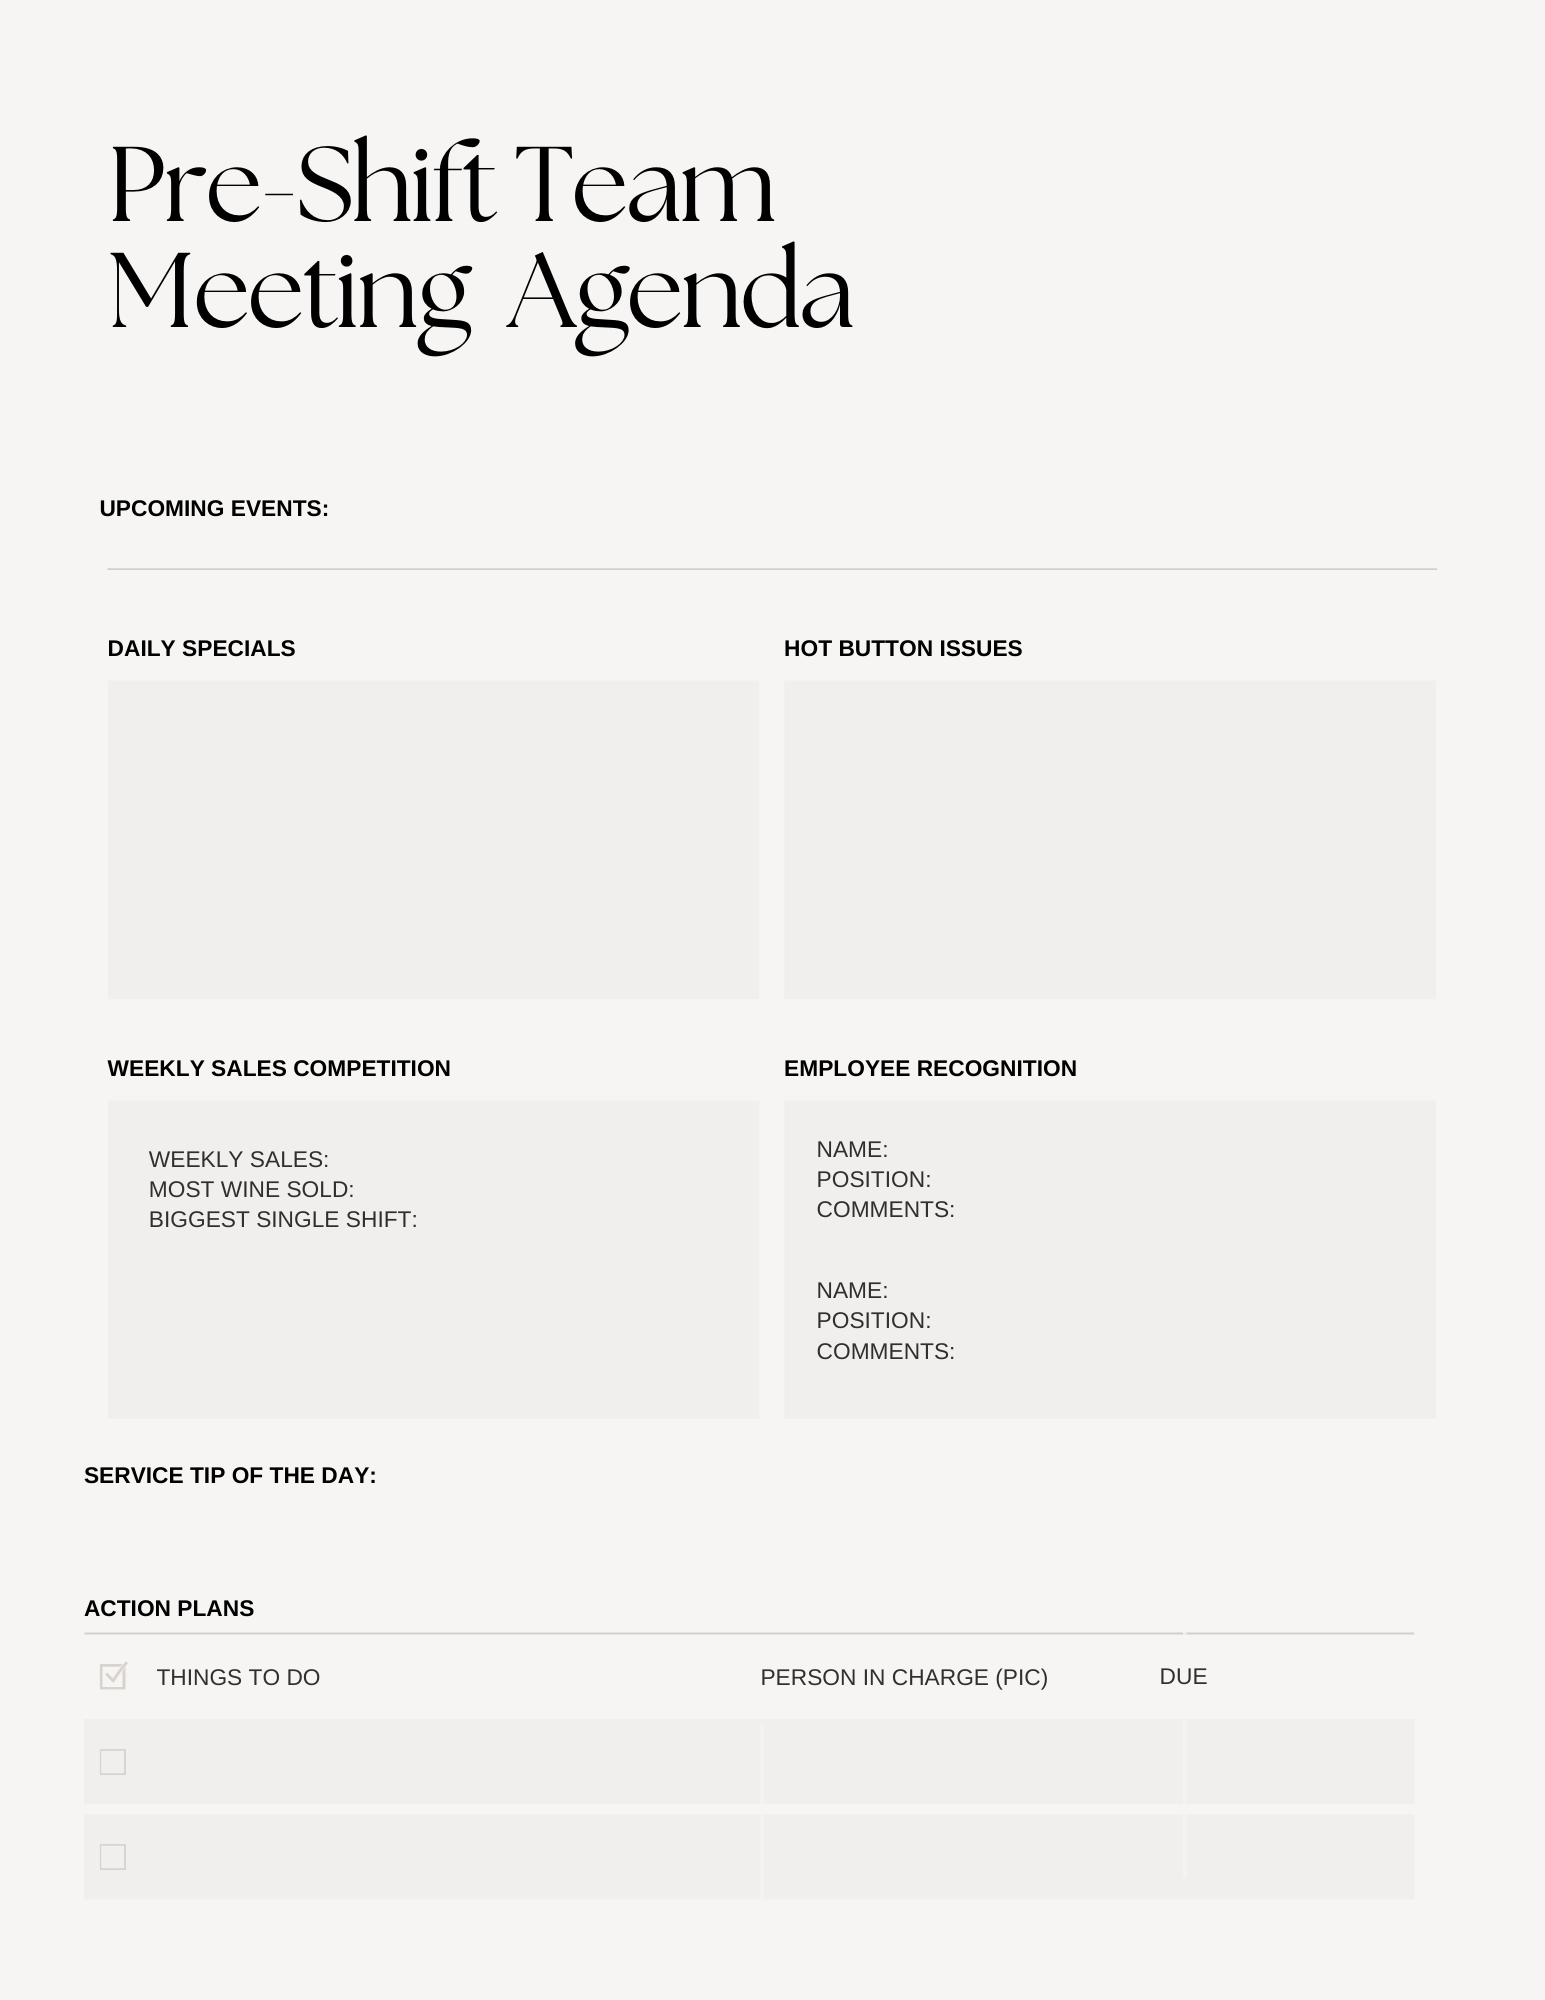 Una agenda para una reunión previa al turno para darte una mejor idea